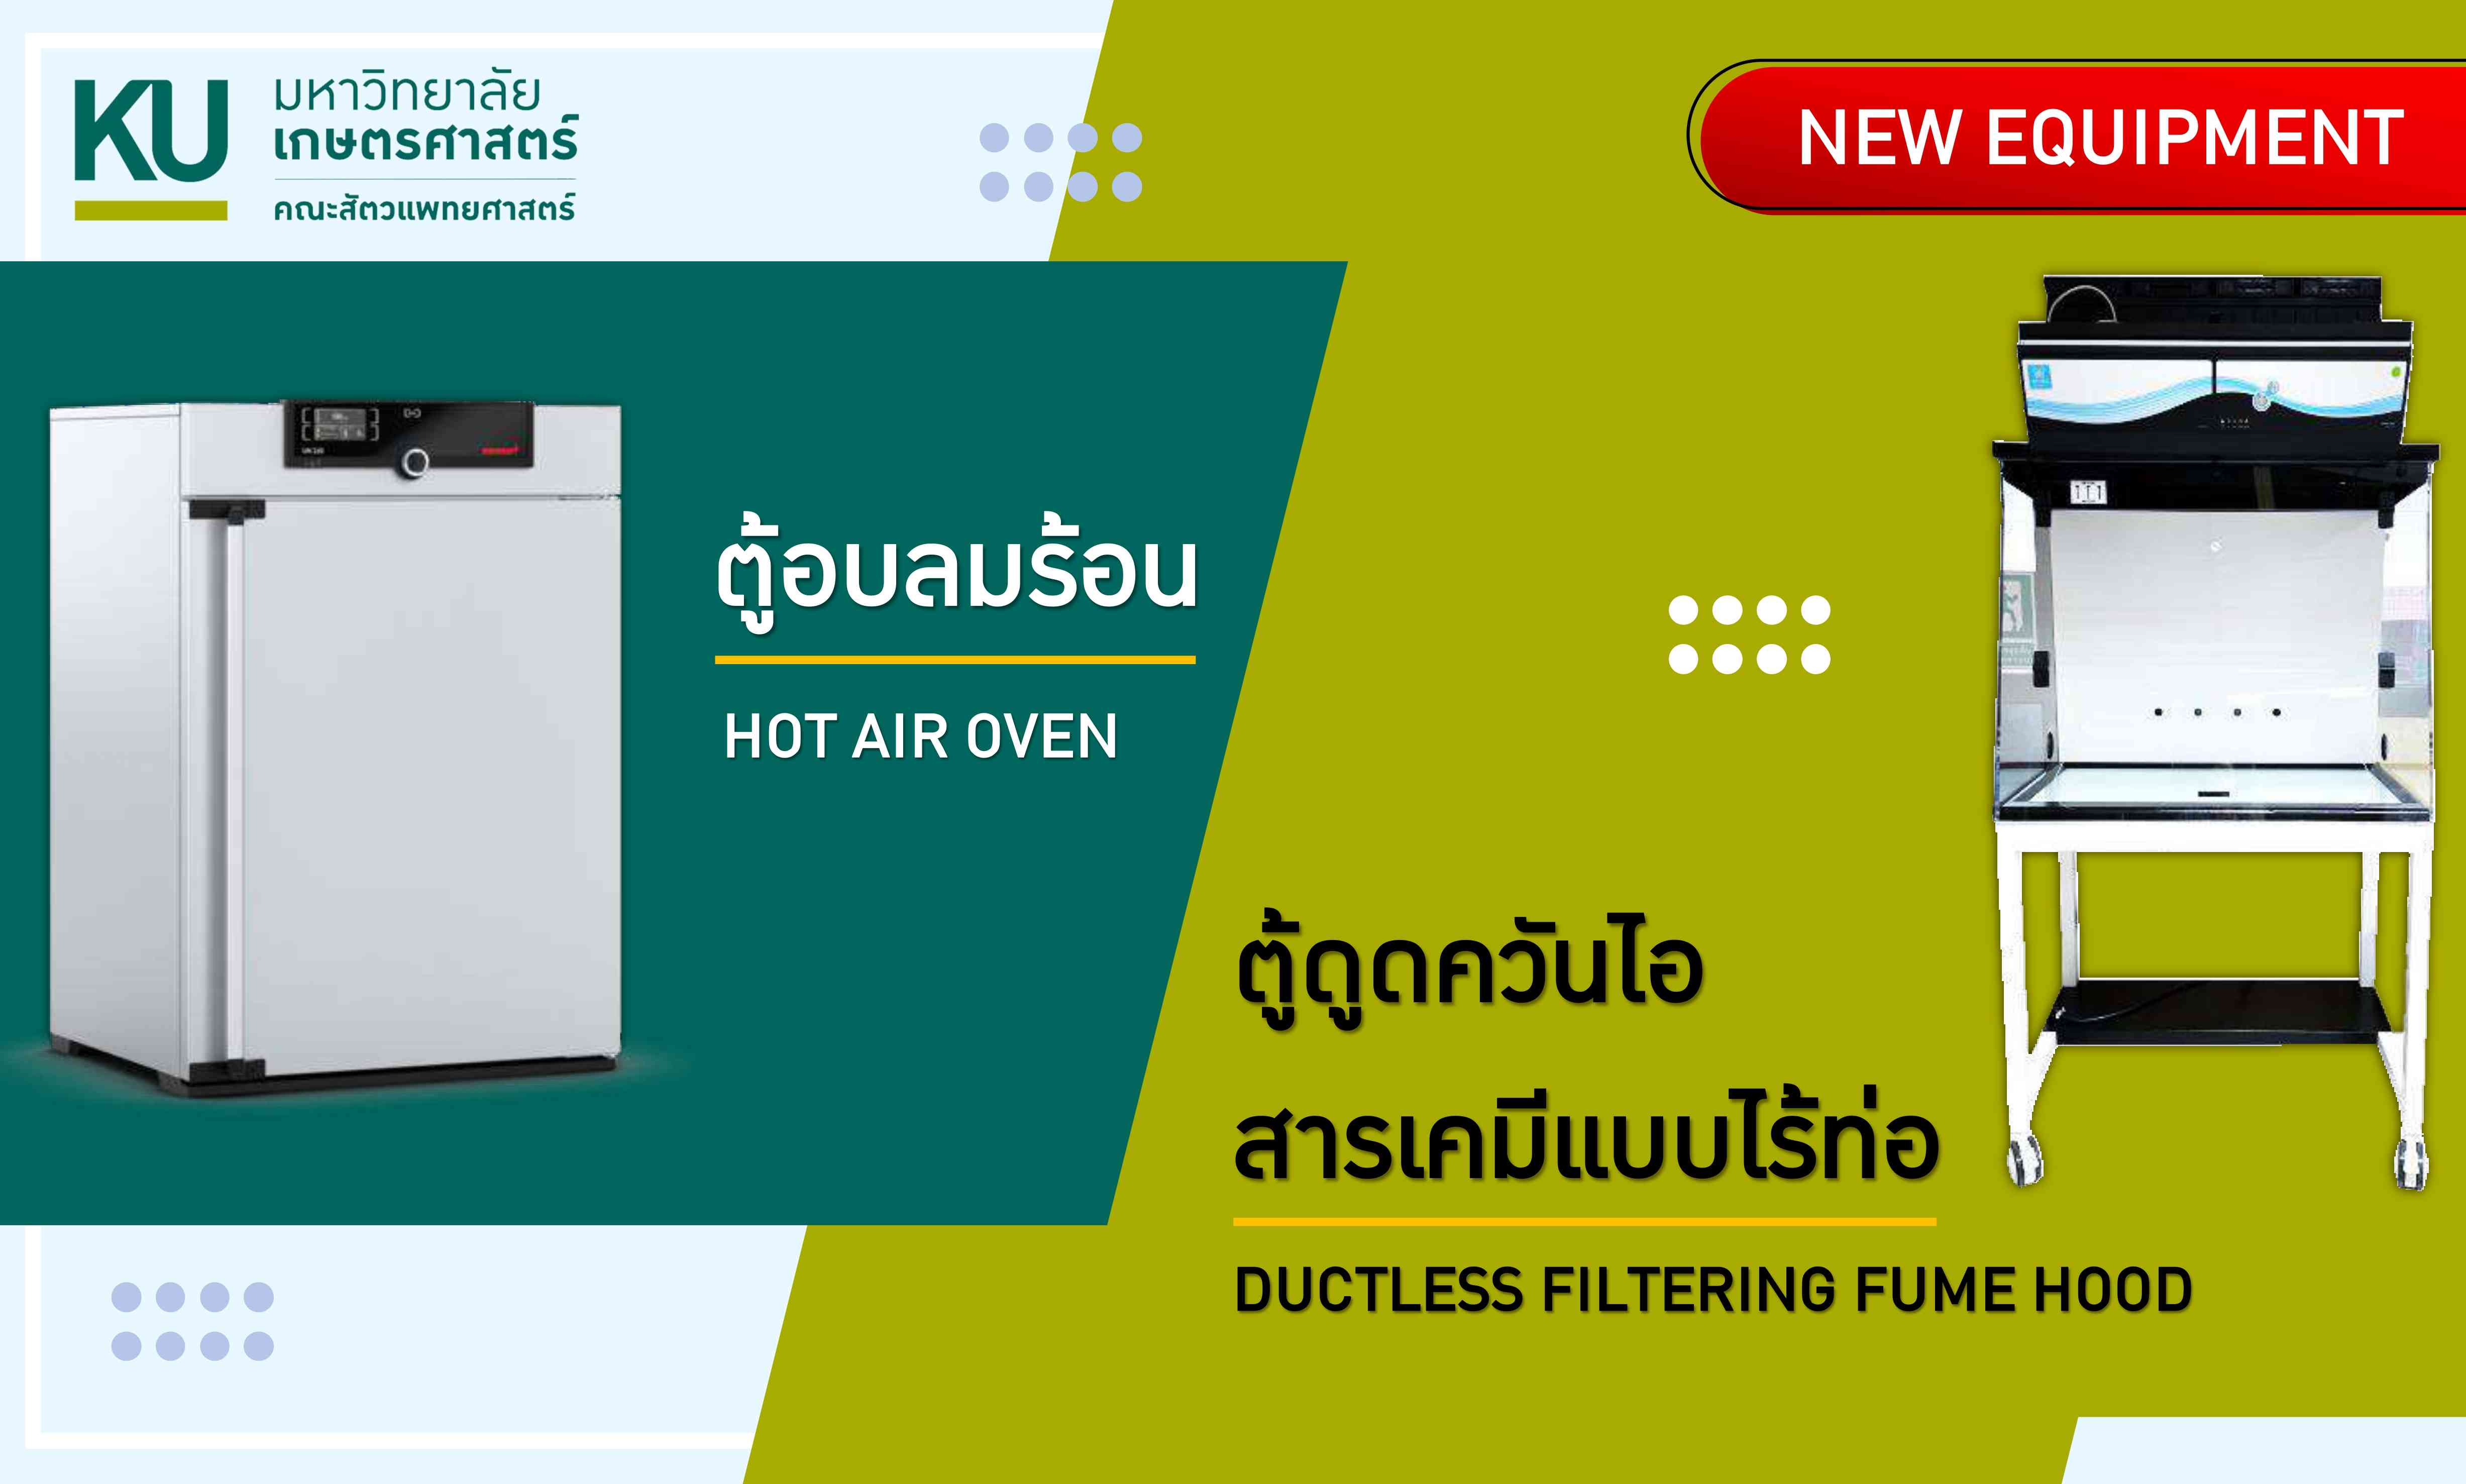 ตู้อบลมร้อน (Hot air oven) และตู้ดูดควันไอสารเคมีแบบไร้ท่อ (Ductless filtering fume hood)